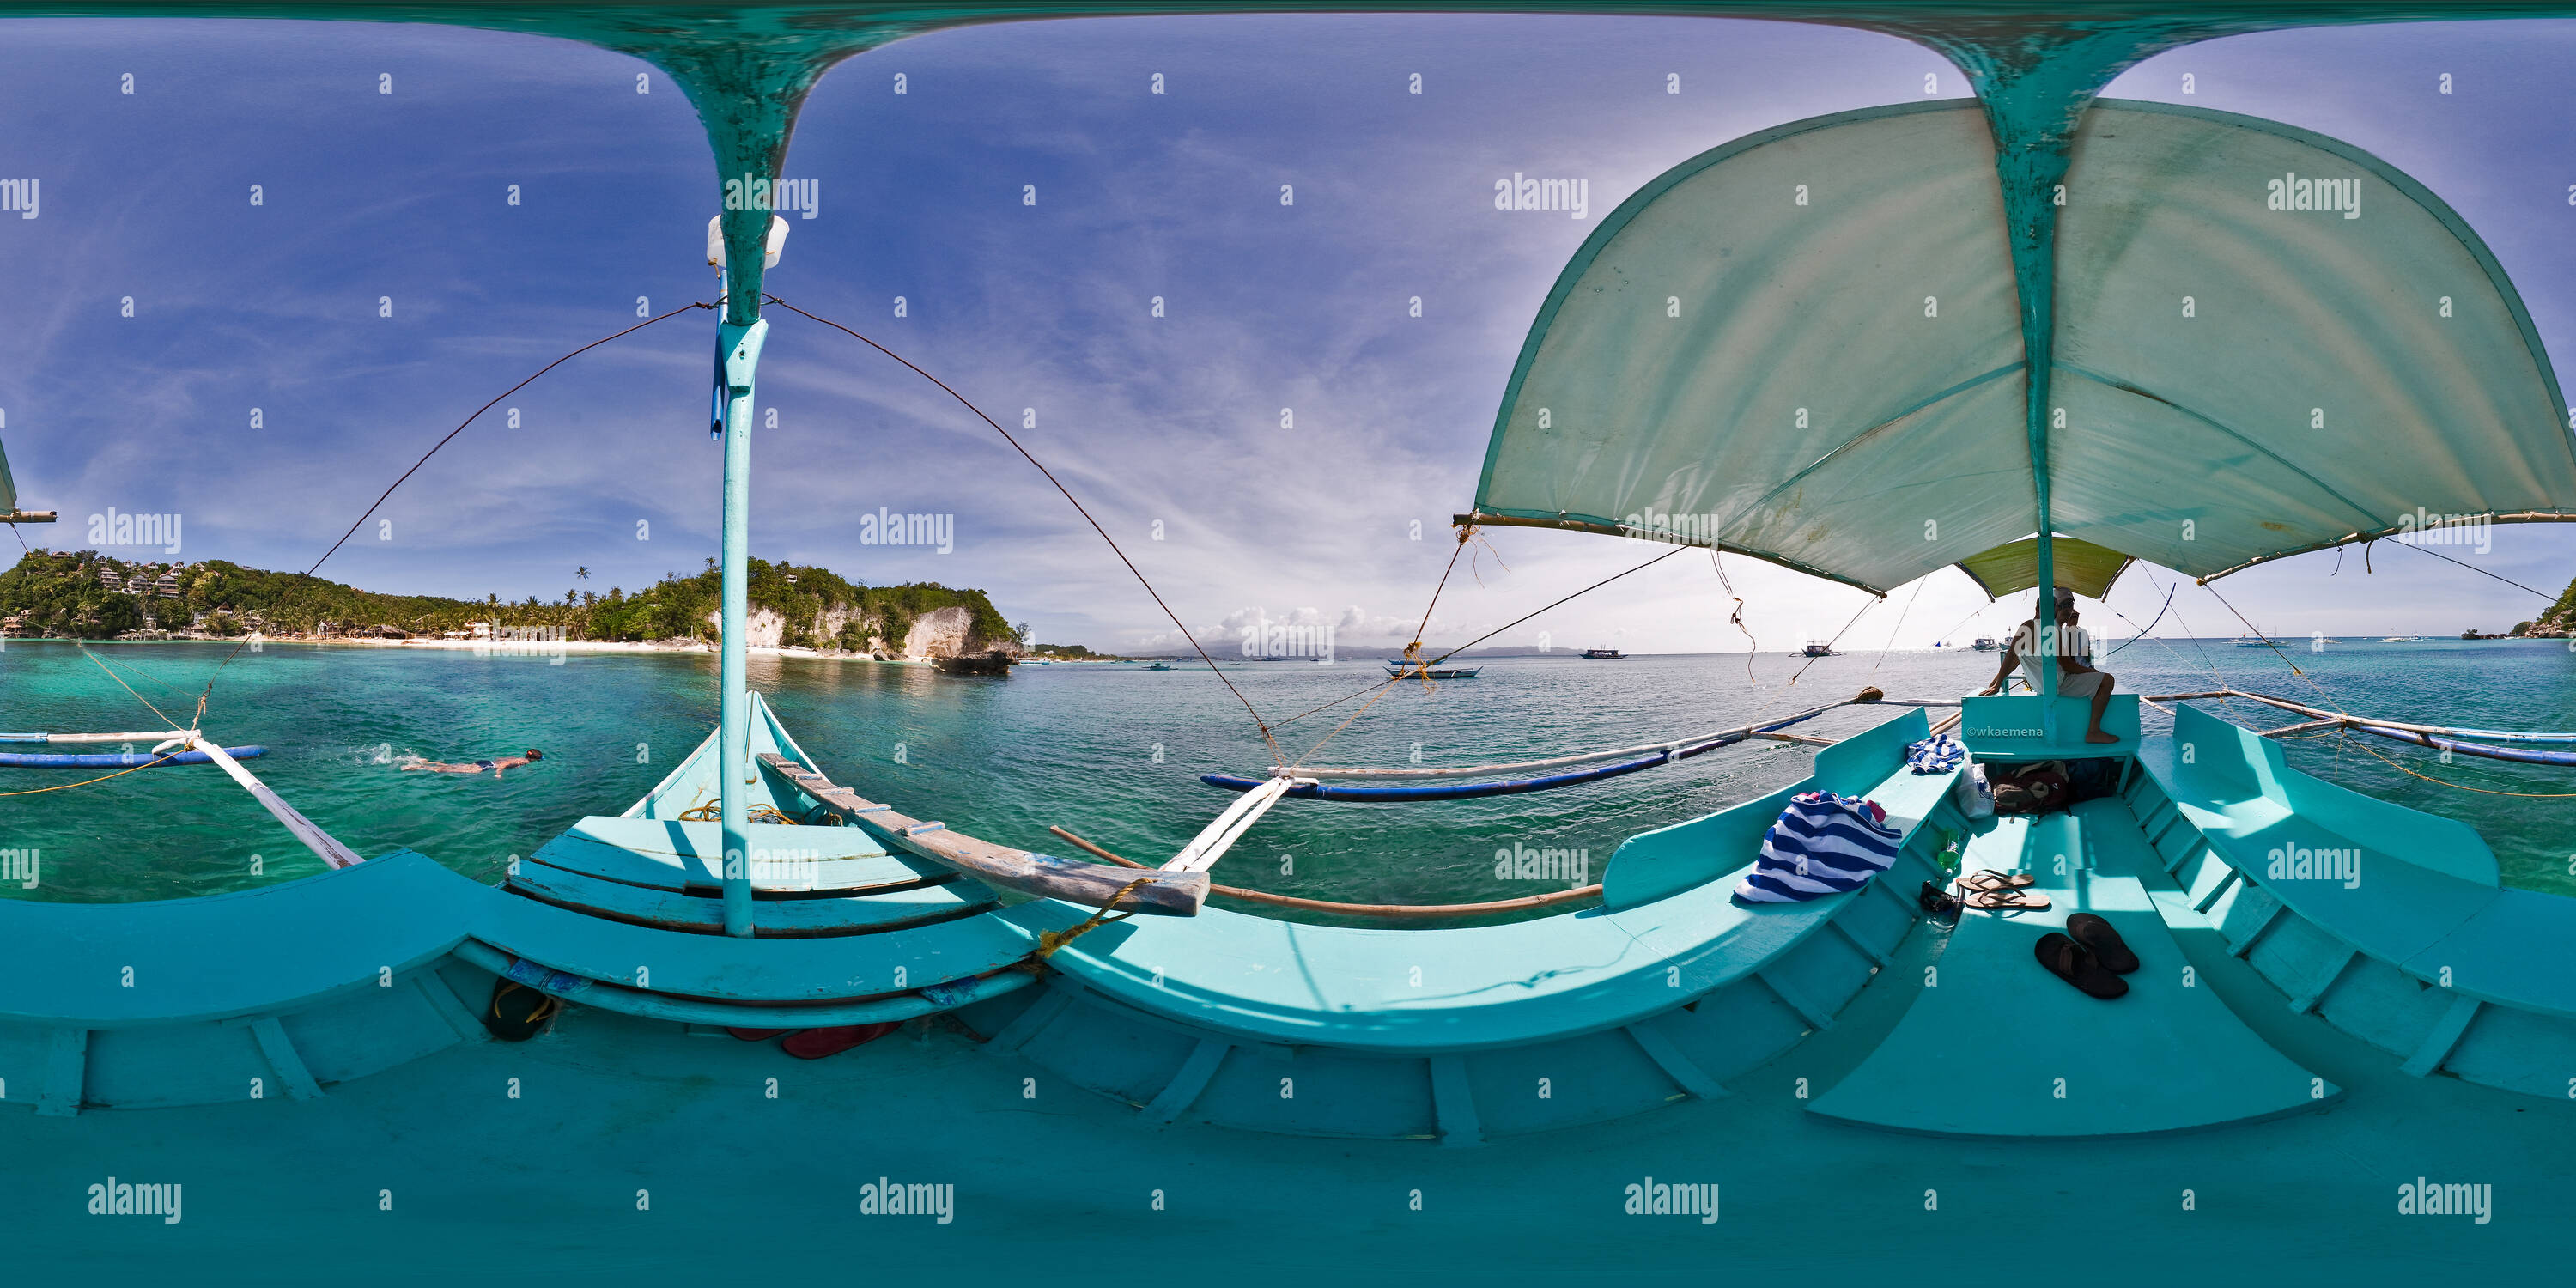 360 degree panoramic view of Outrigger Boat (Bangka)